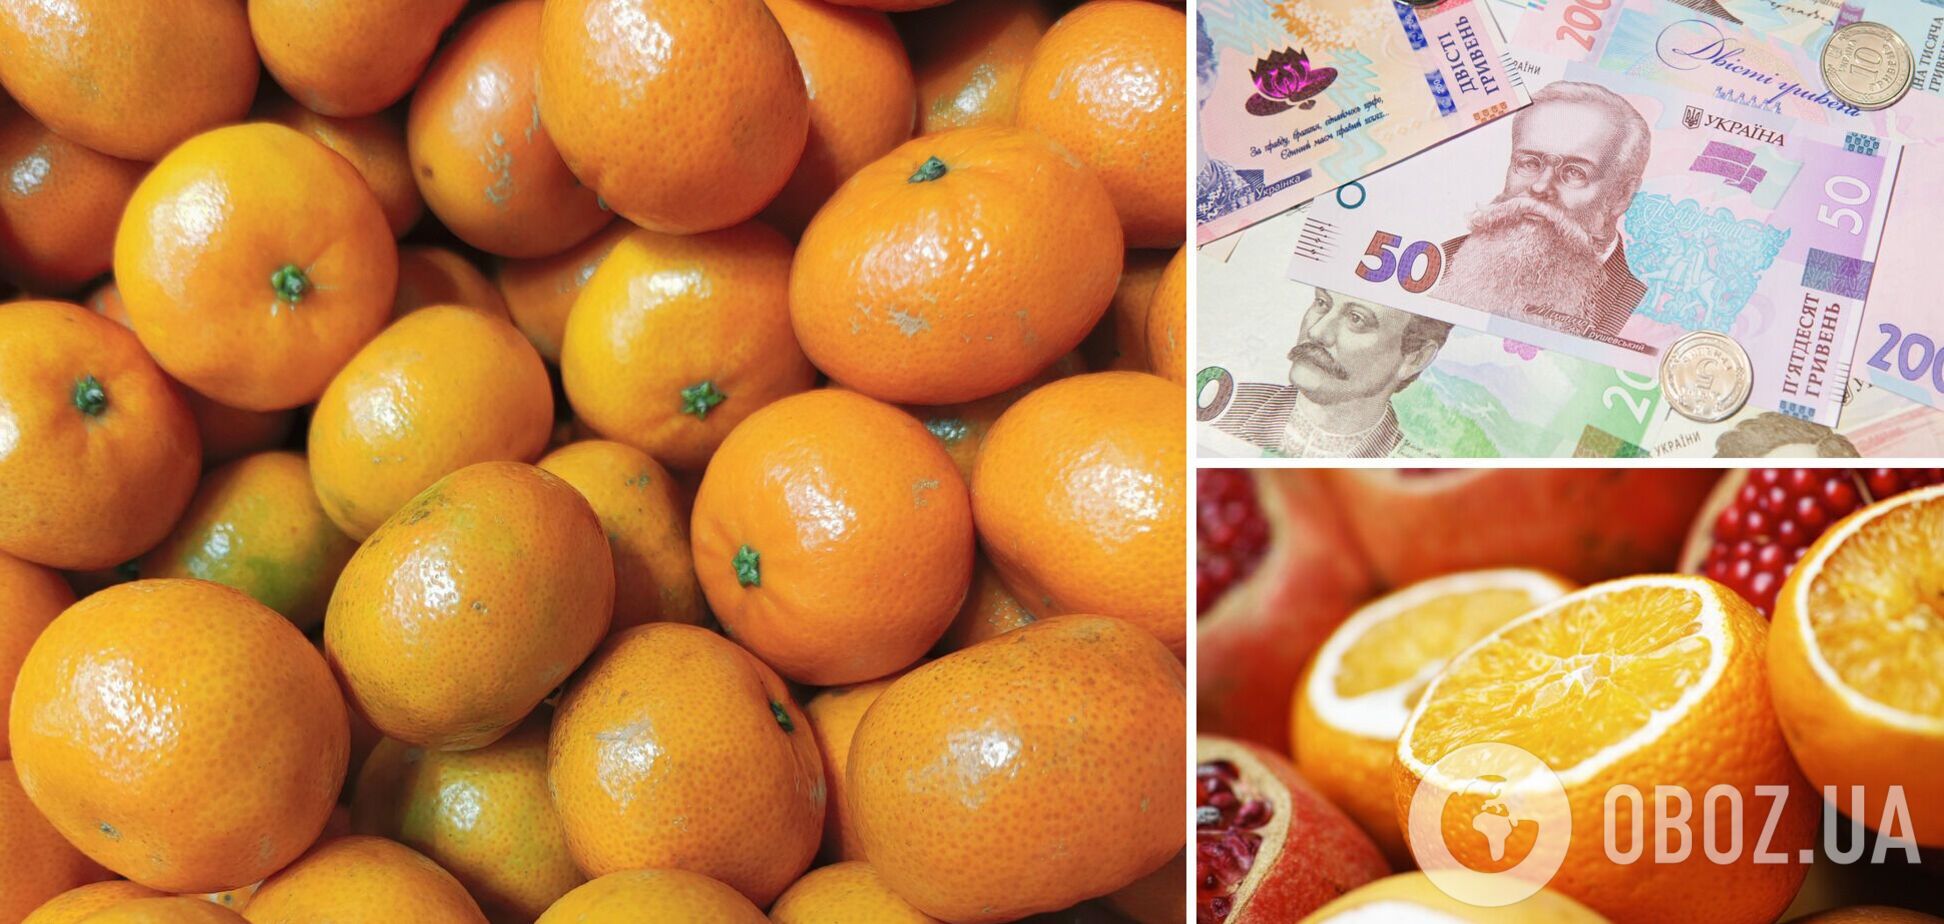 Цены на мандарины, апельсины и лимоны в Украине изменились